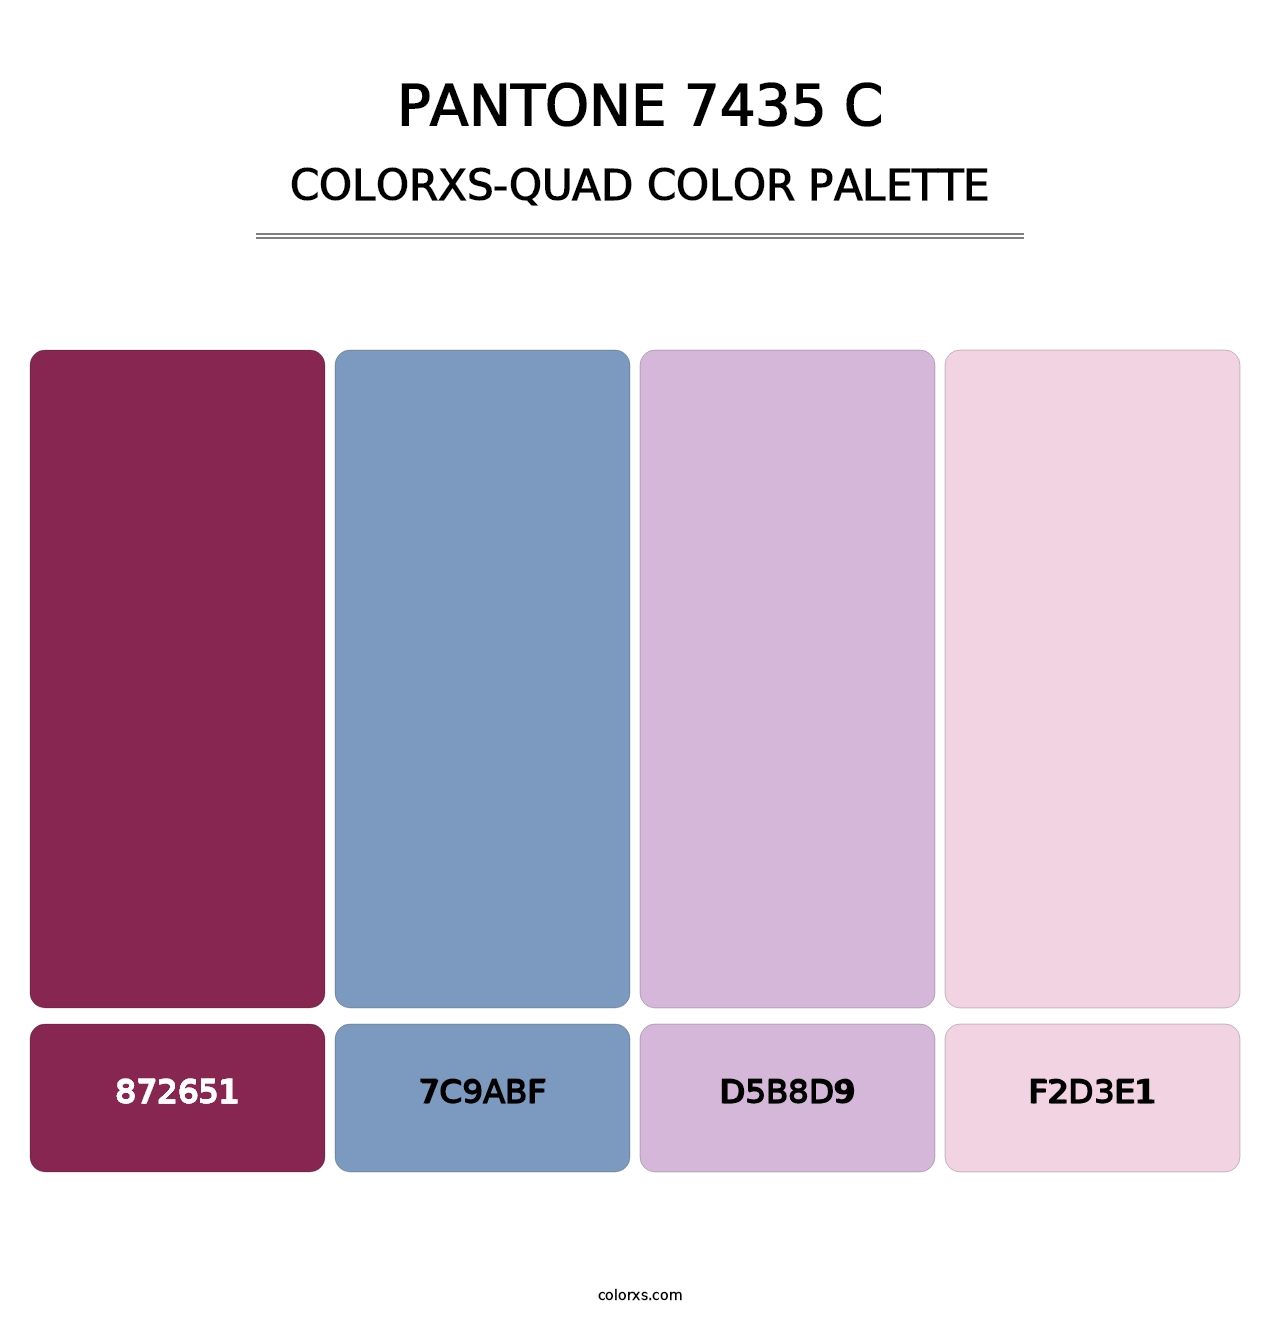 PANTONE 7435 C - Colorxs Quad Palette